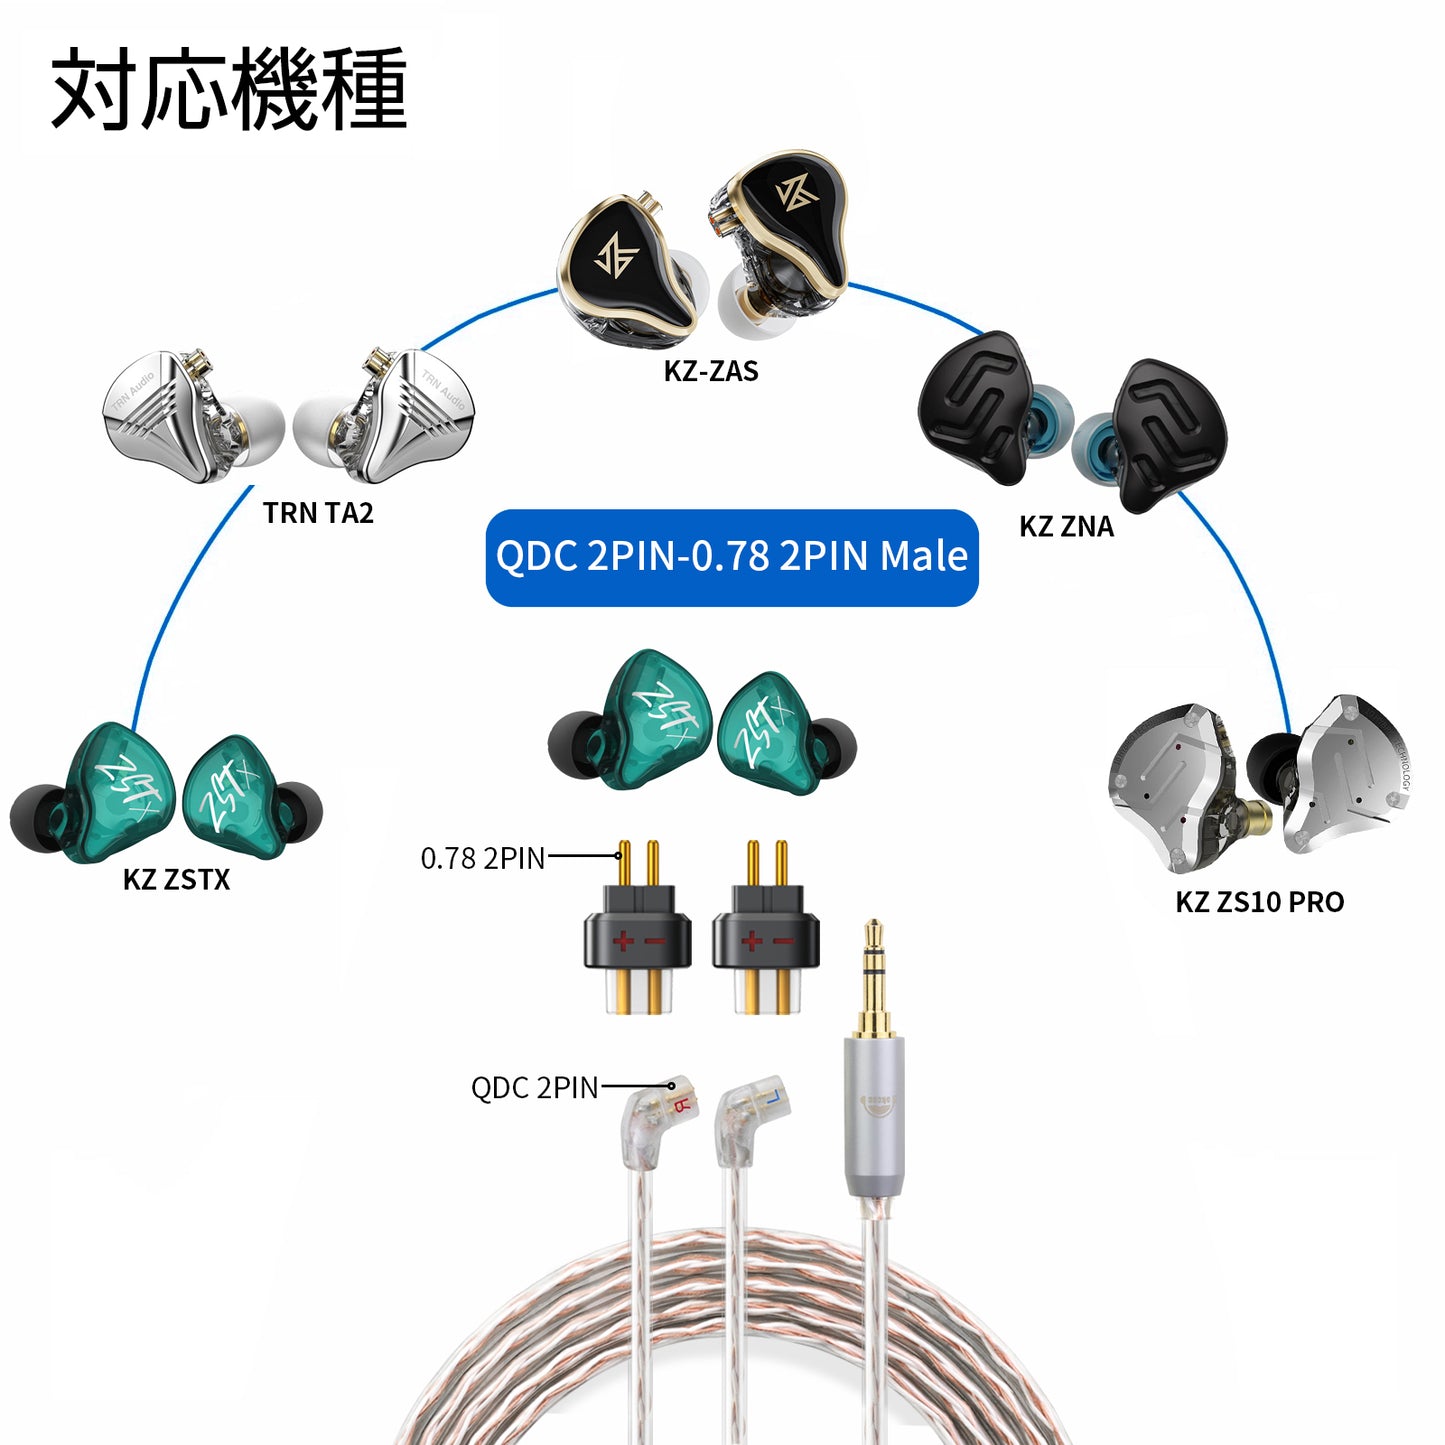 cooyin QDC 0.78 2pin(リケーブル側) to 0.78 2pin(イヤホン側) アダプター コネクター スライダー 金メッキプラグ 統合成形技術 音質劣化なし簡潔 精緻 線材テスト作業用 ミニタイプ